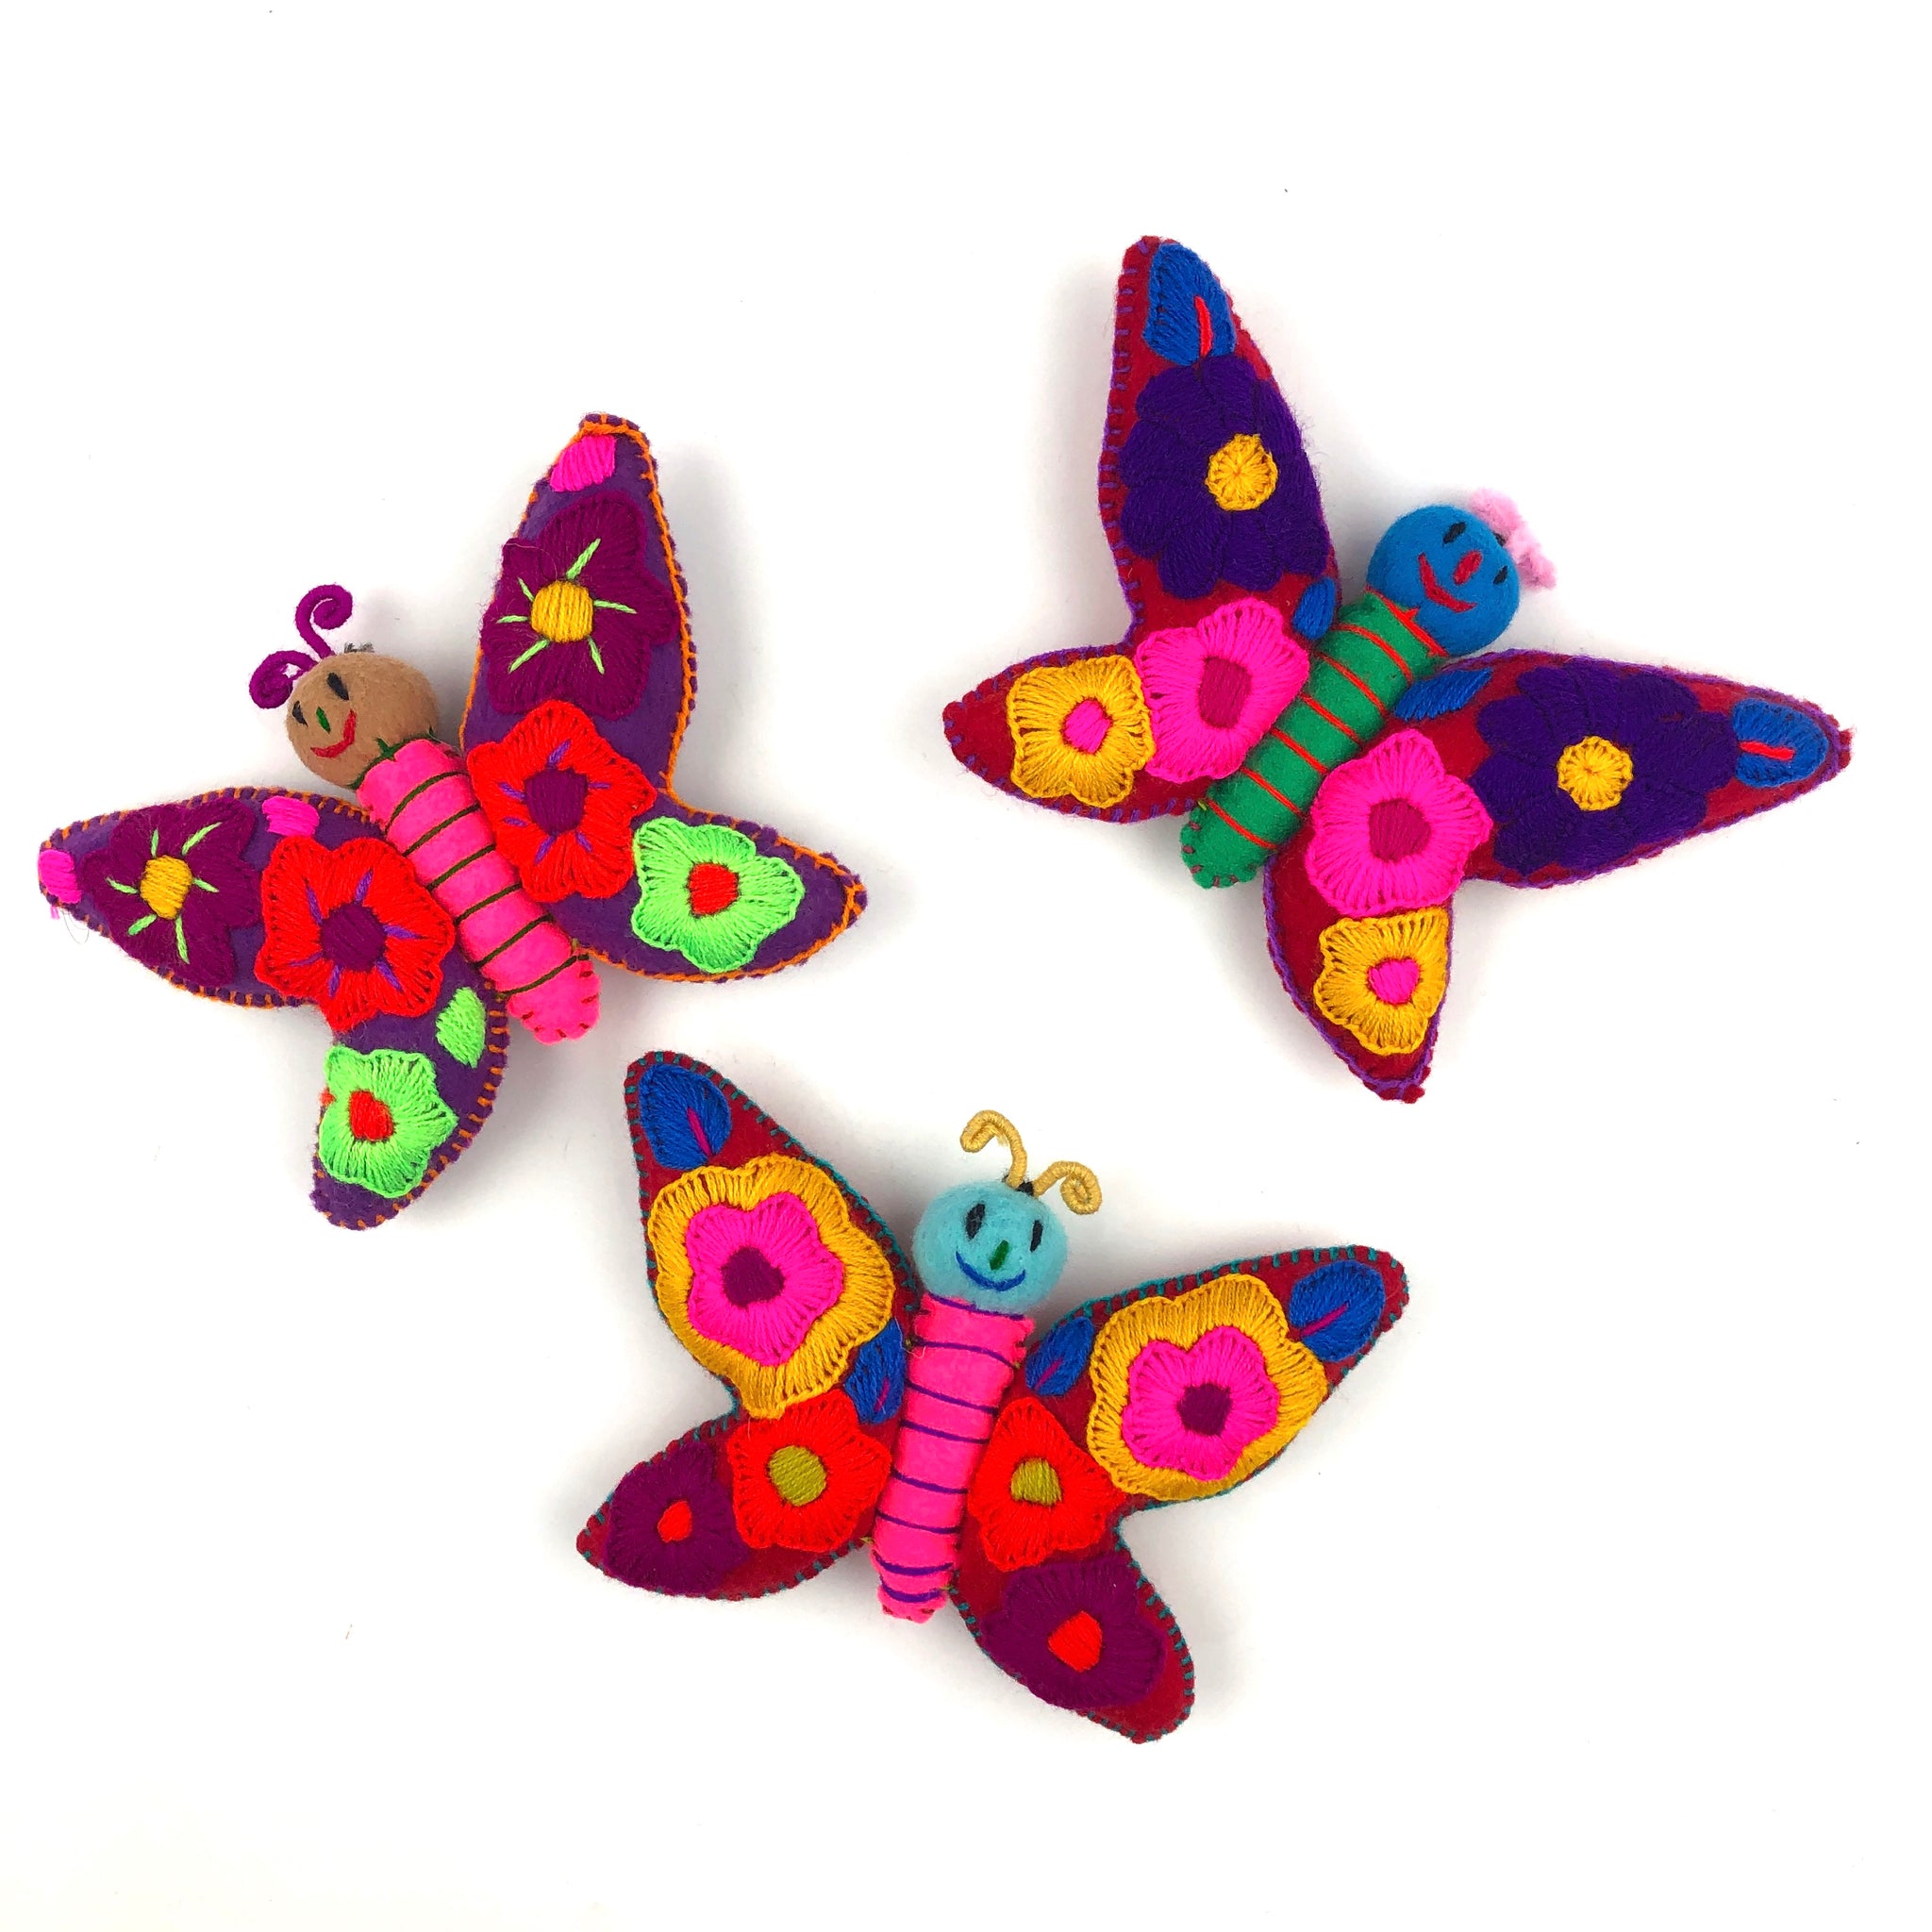 Embroidered Folk Art Butterflies